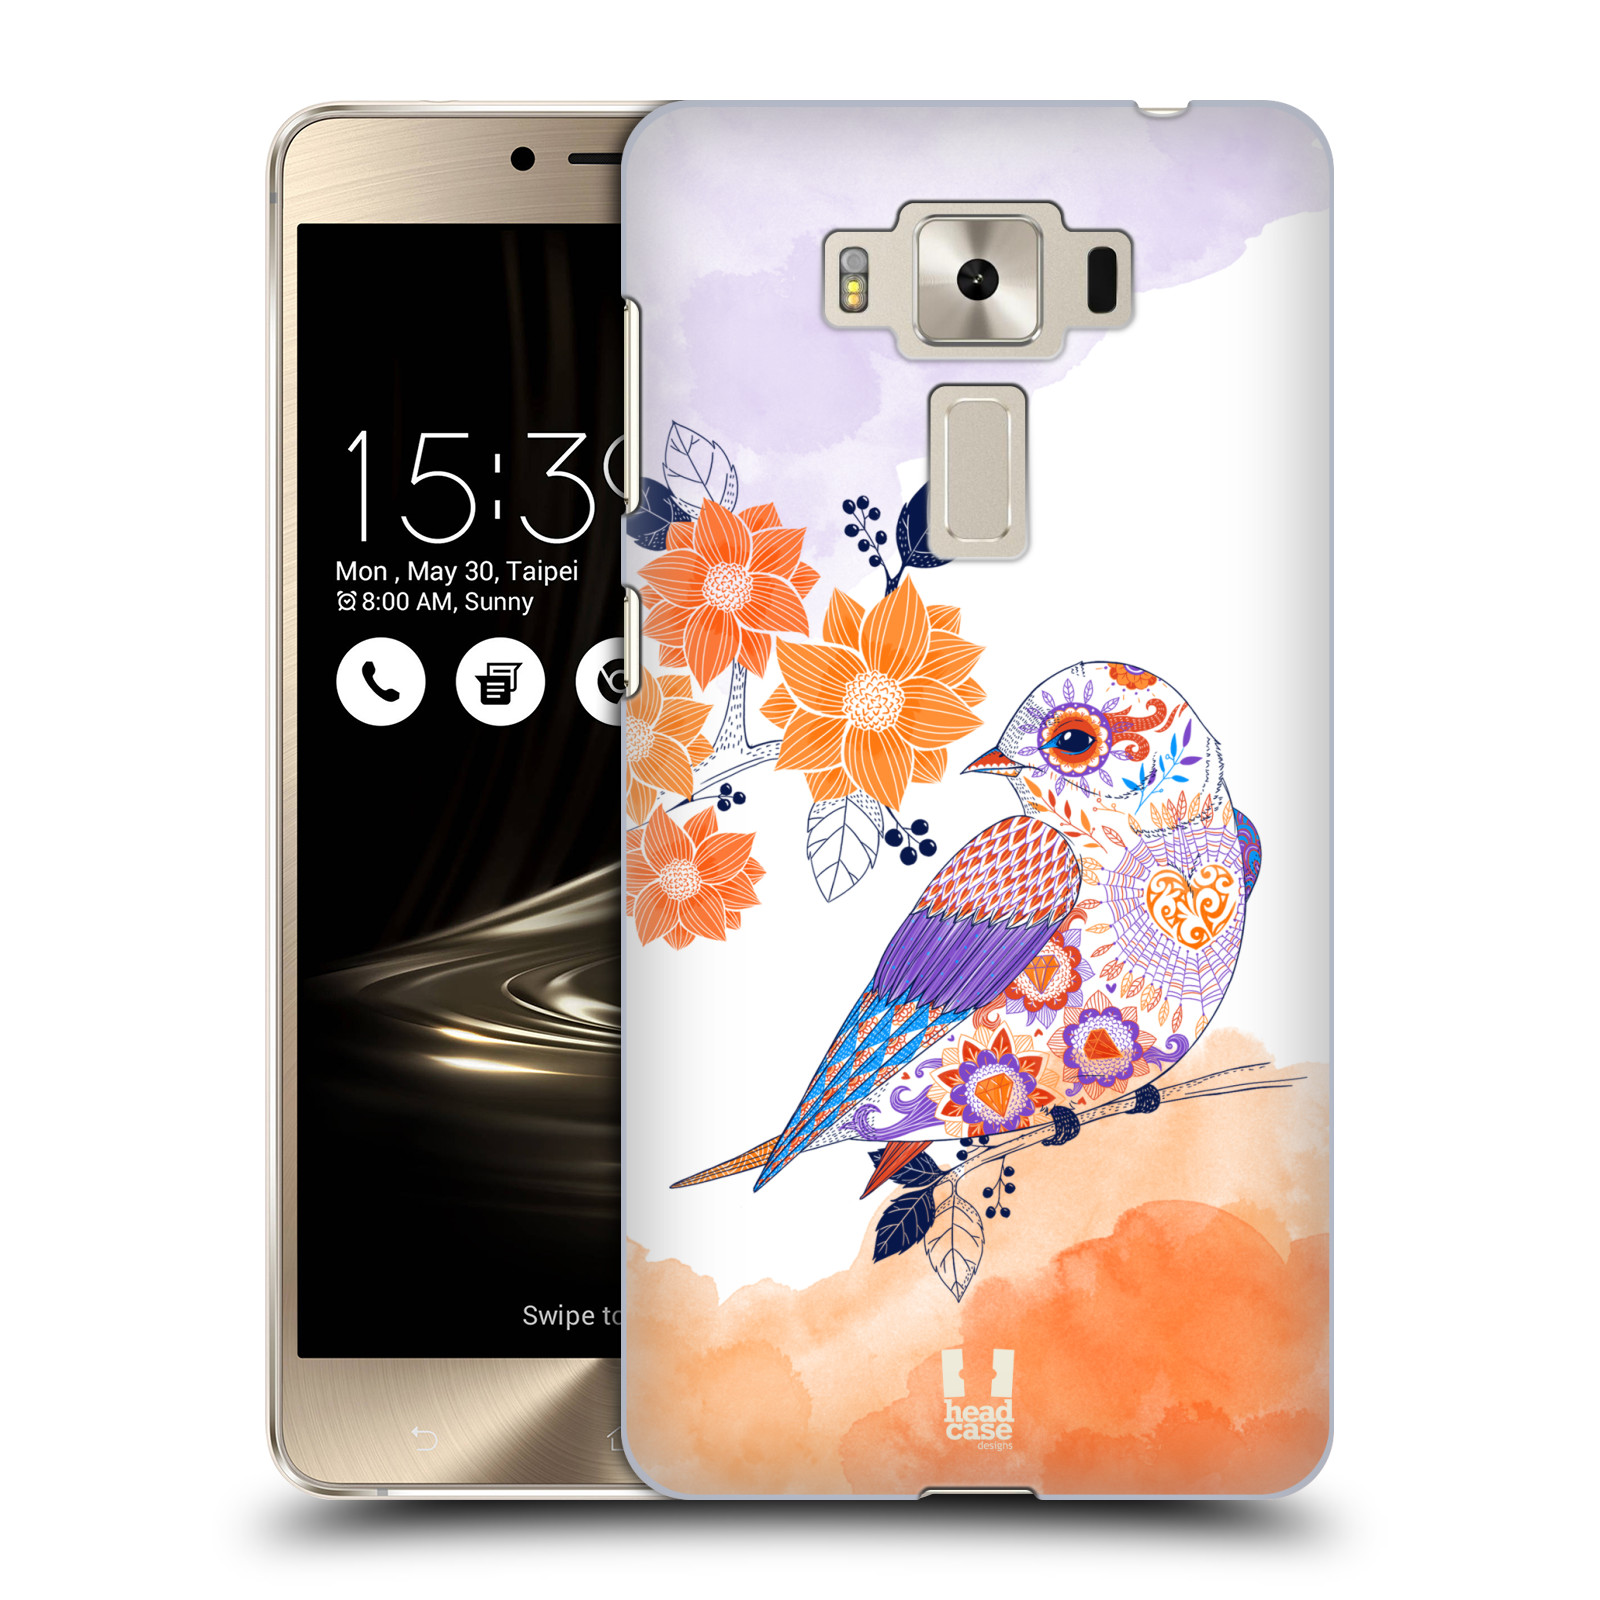 HEAD CASE plastový obal na mobil Asus Zenfone 3 DELUXE ZS550KL vzor Květina ptáčci ORANŽOVÁ